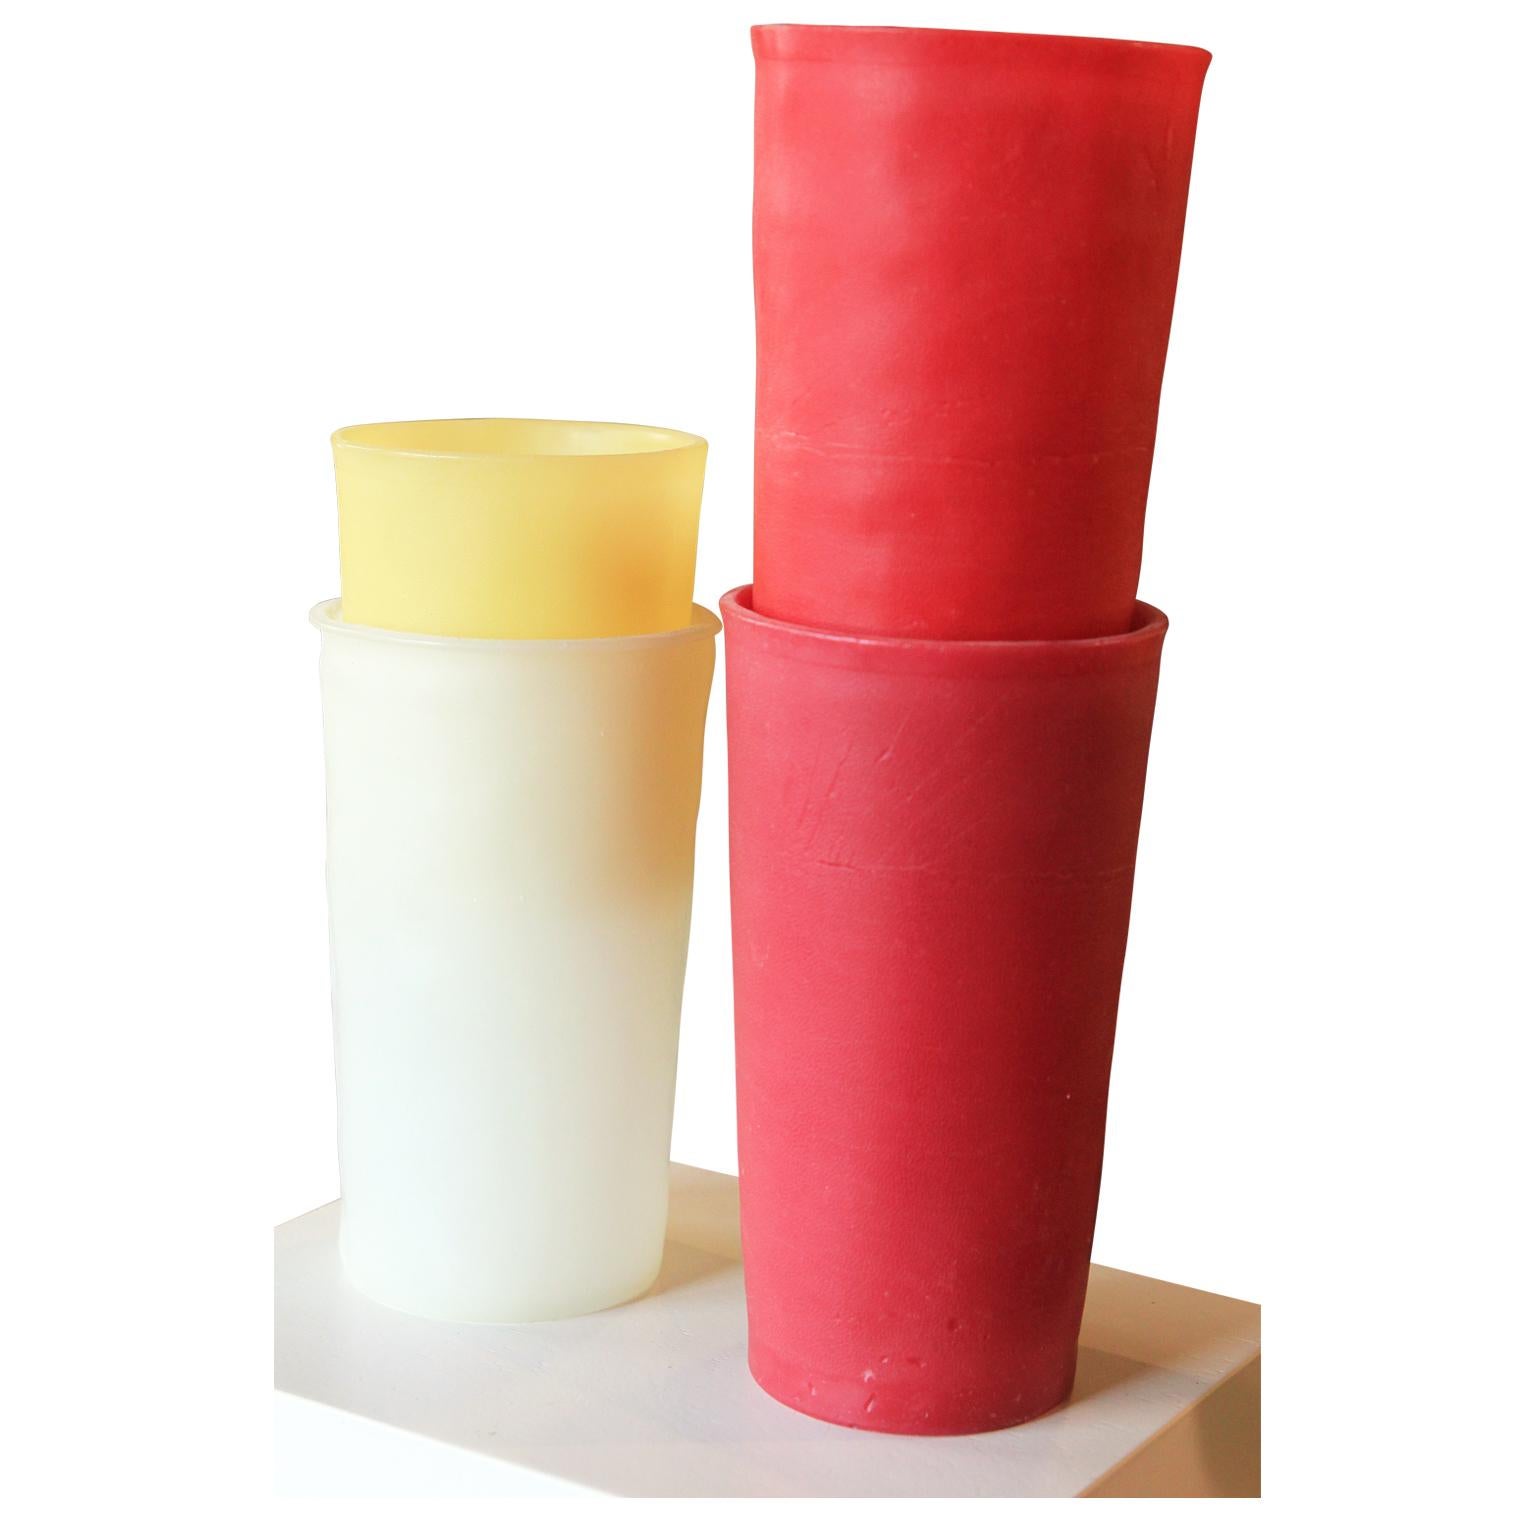 Collection moderne de gobelets tupperware au rendu réaliste, réalisés à partir de cire d'abeille et de pigments par l'artiste californien George Stoll. La pièce présente un ensemble de quatre tasses rouges, jaunes et blanches soigneusement empilées